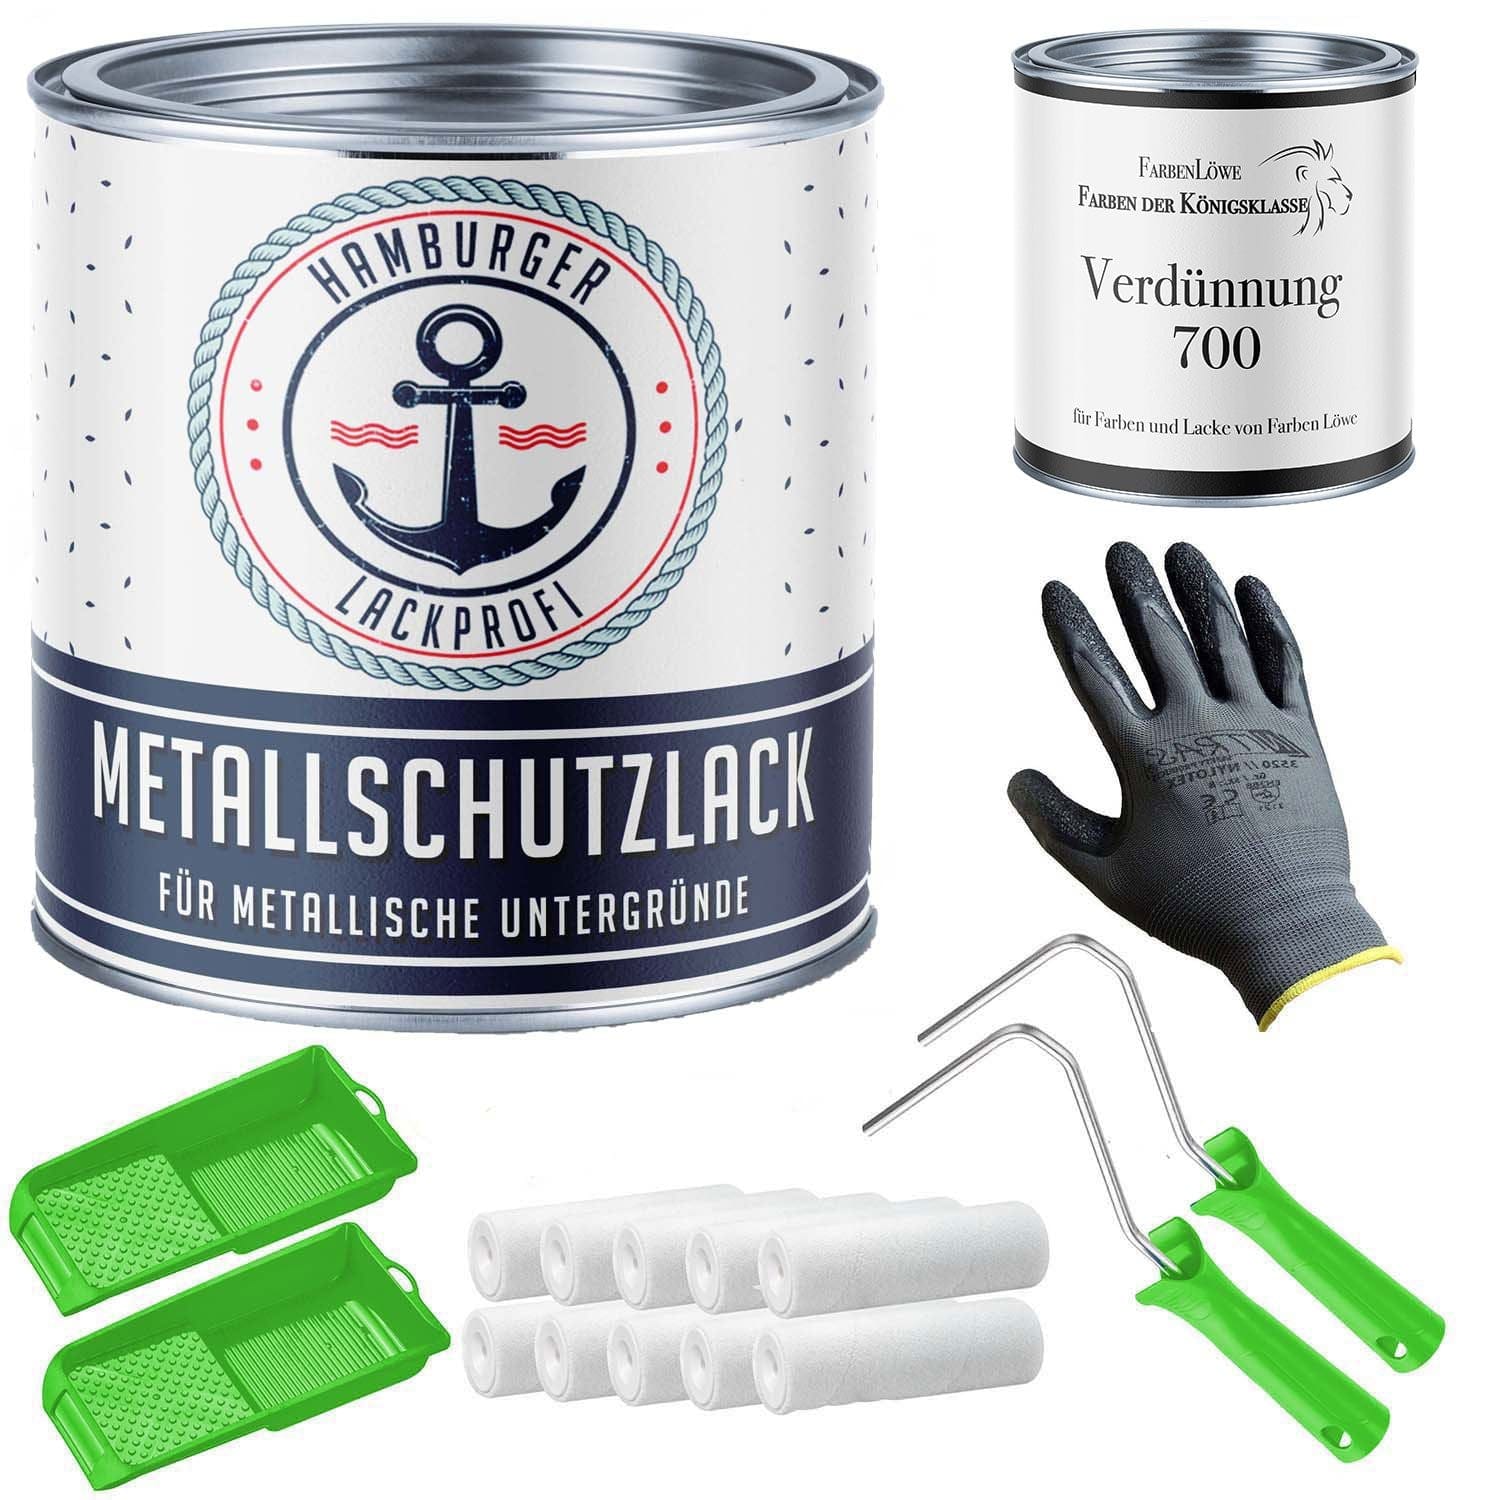 FARBENLÖWE Lacke & Beschichtungen Hamburger Lack-Profi Metallschutzlack in Anthrazitgrau RAL 7016 mit Lackierset (X300) & Verdünnung (1 L) - 30% Sparangebot